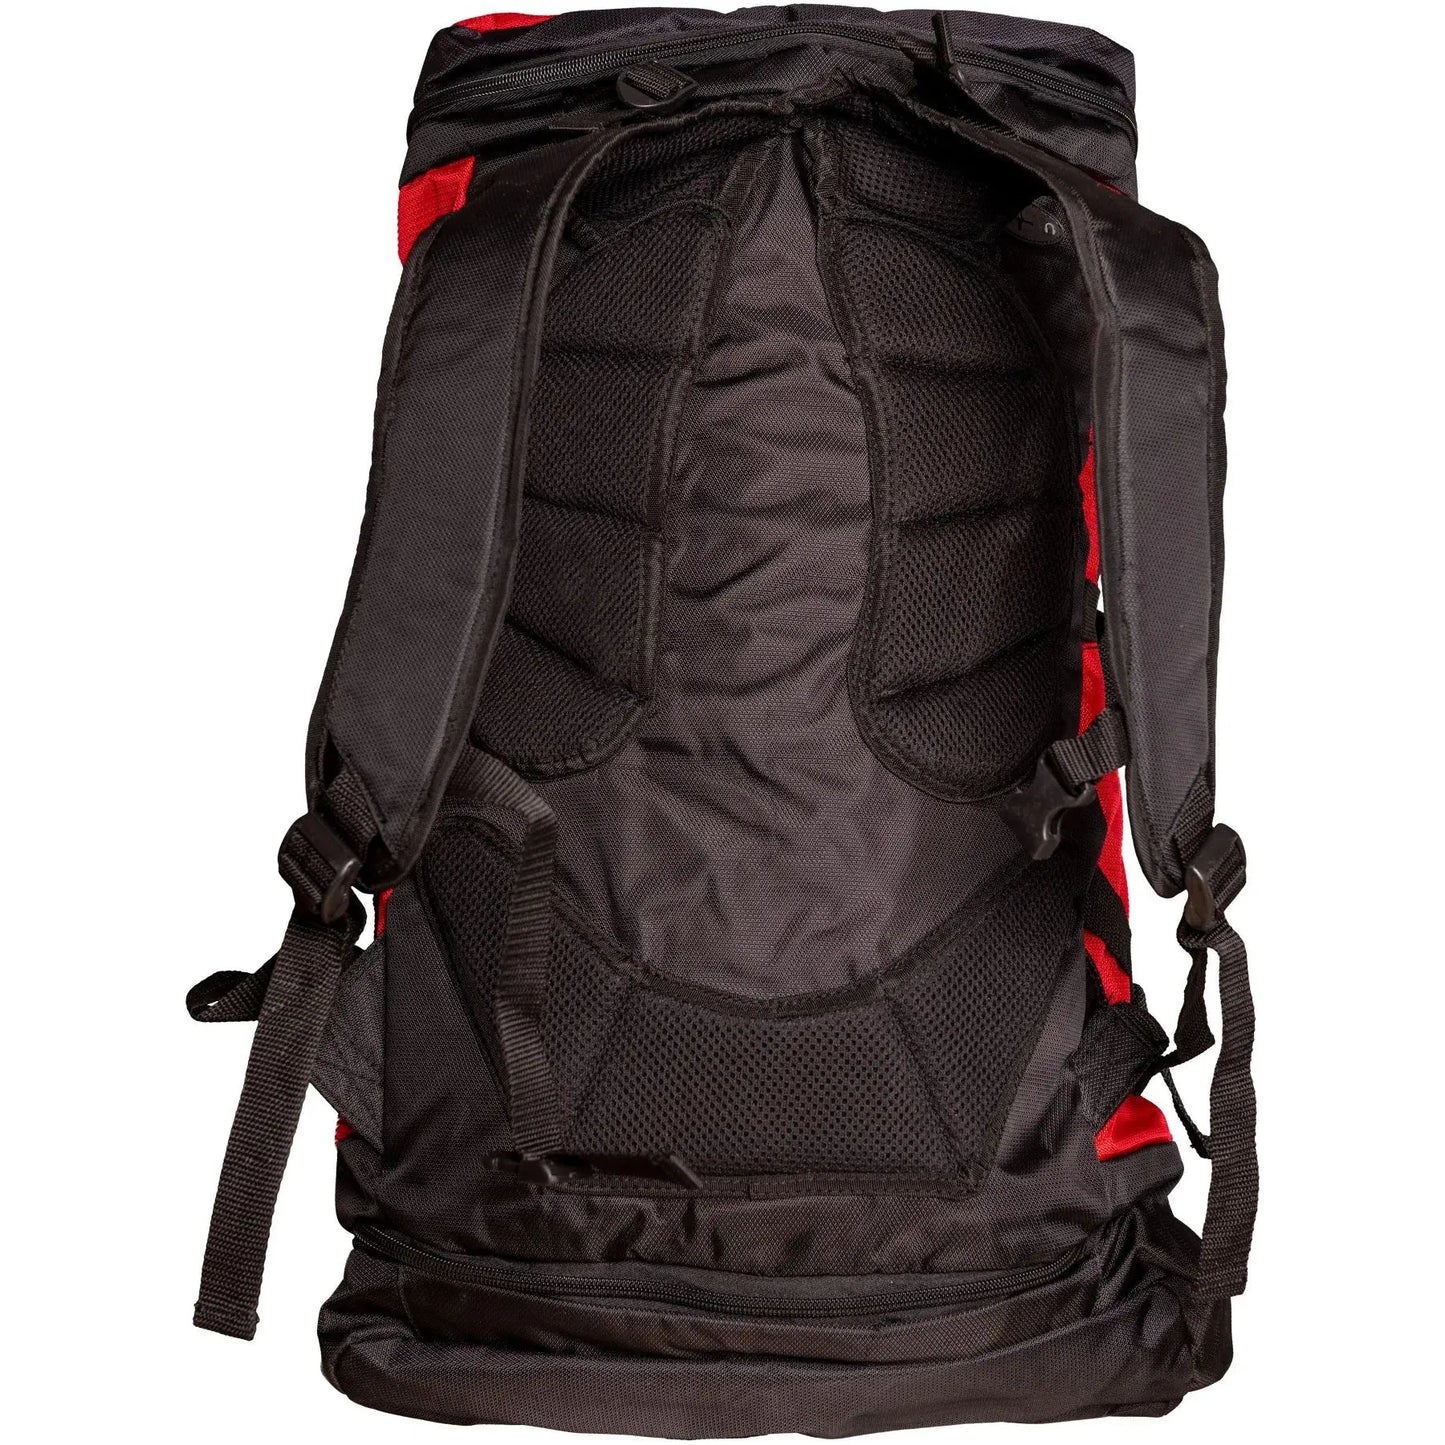 Hayashi Backpack “Giant WKF”